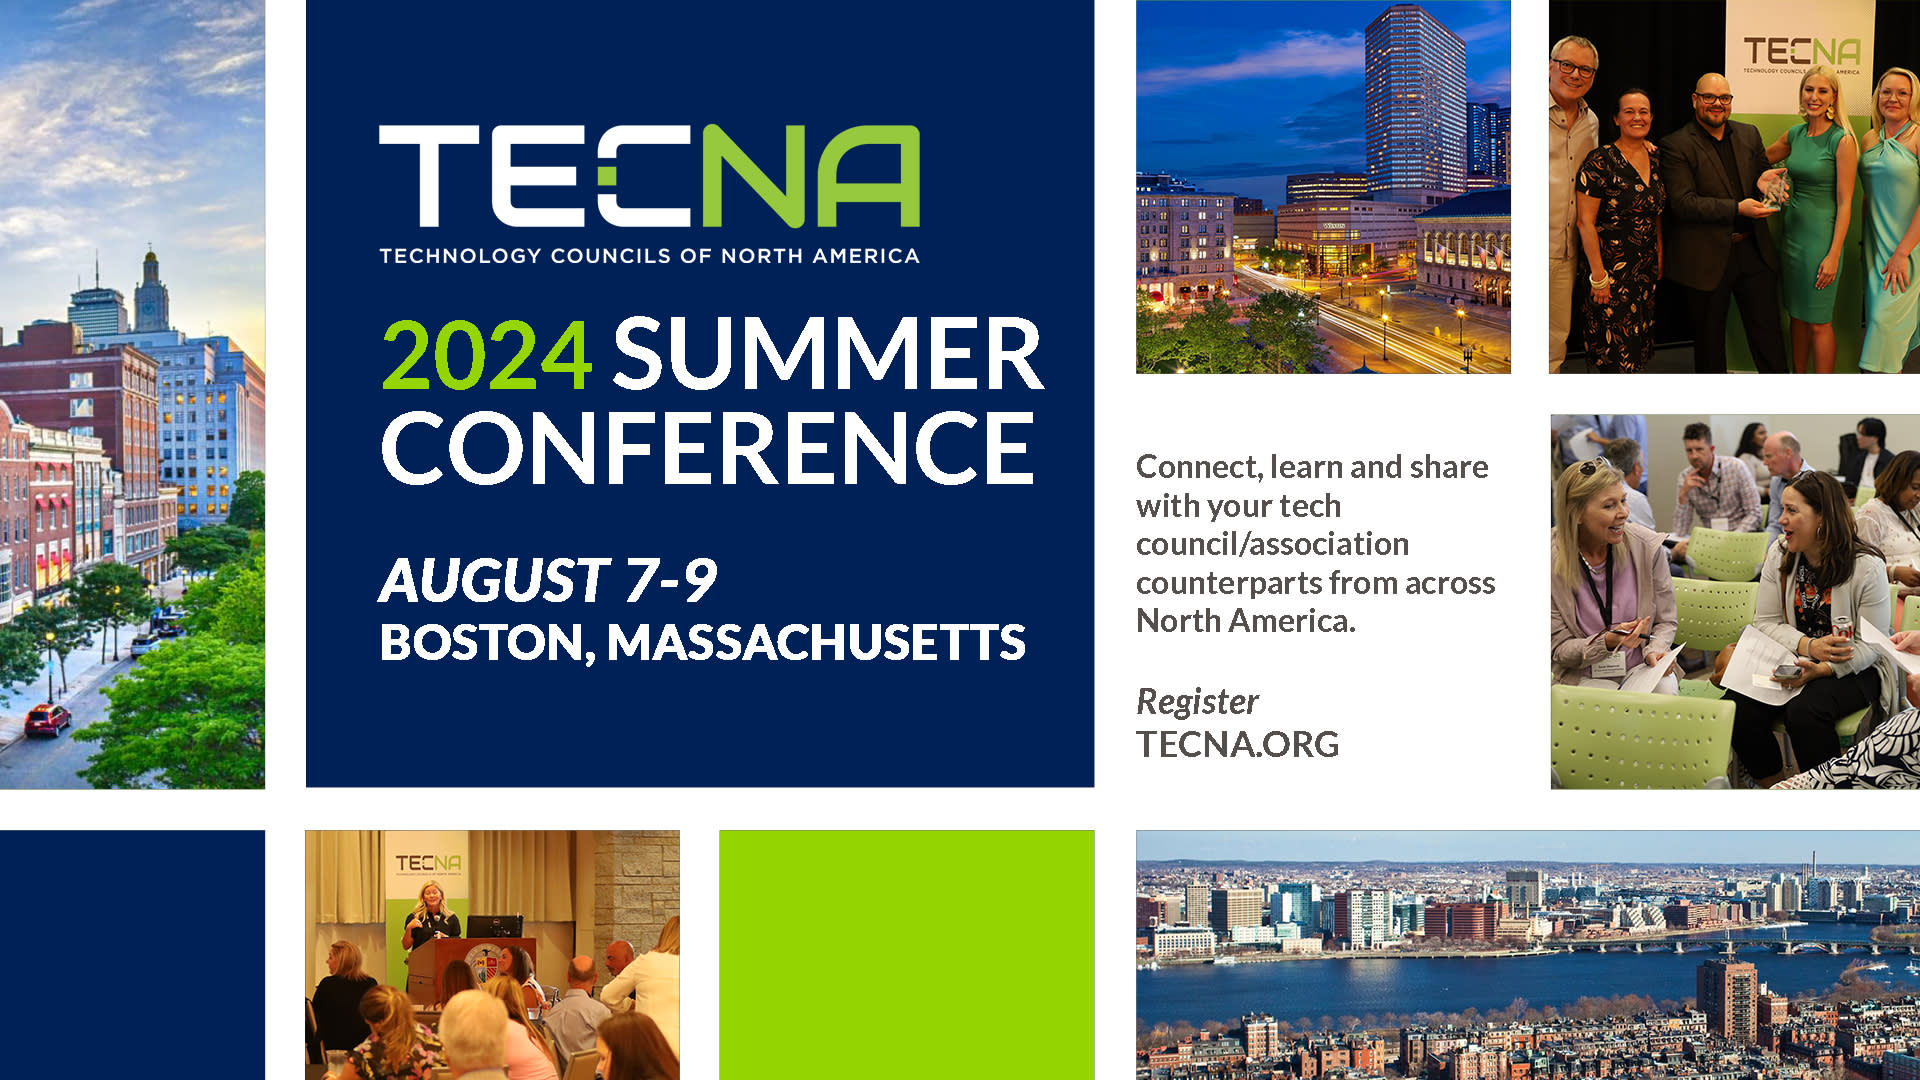 Summer Conference 2024 Event Registration